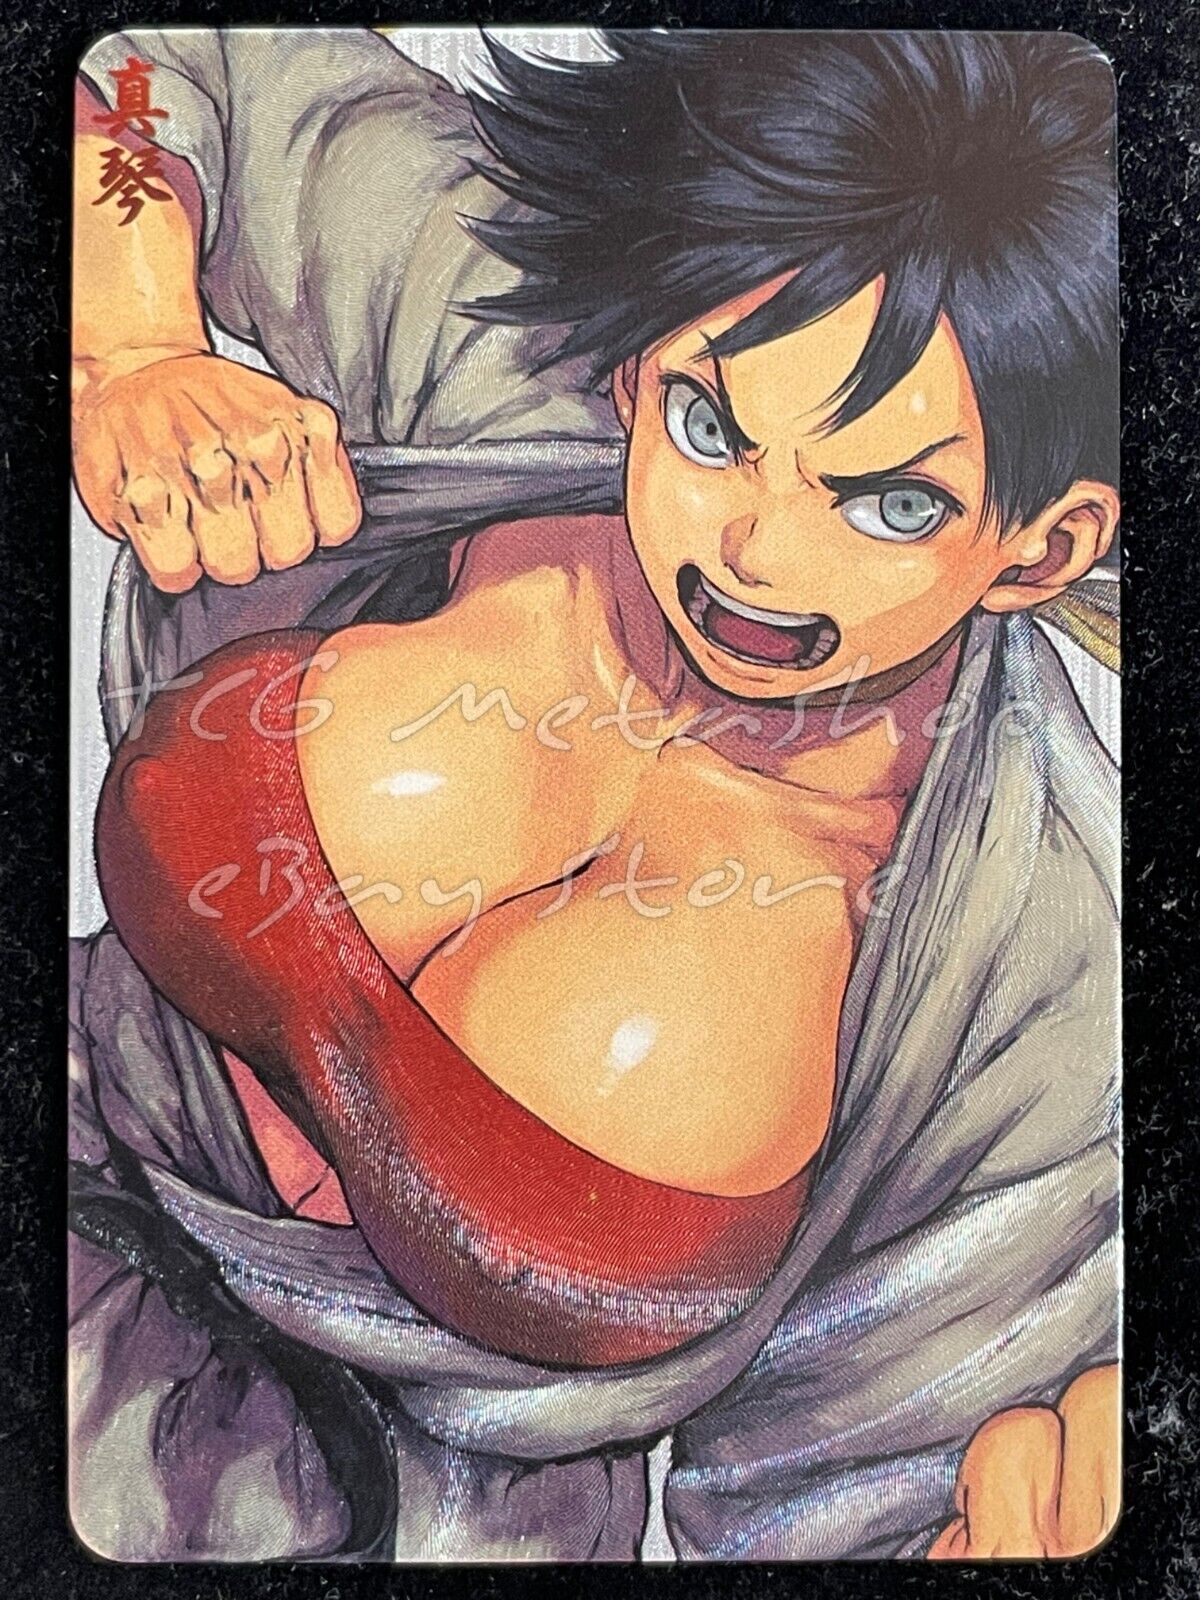 🔥 Makoto Street Fighter Goddess Story Anime Card ACG # 2337 🔥